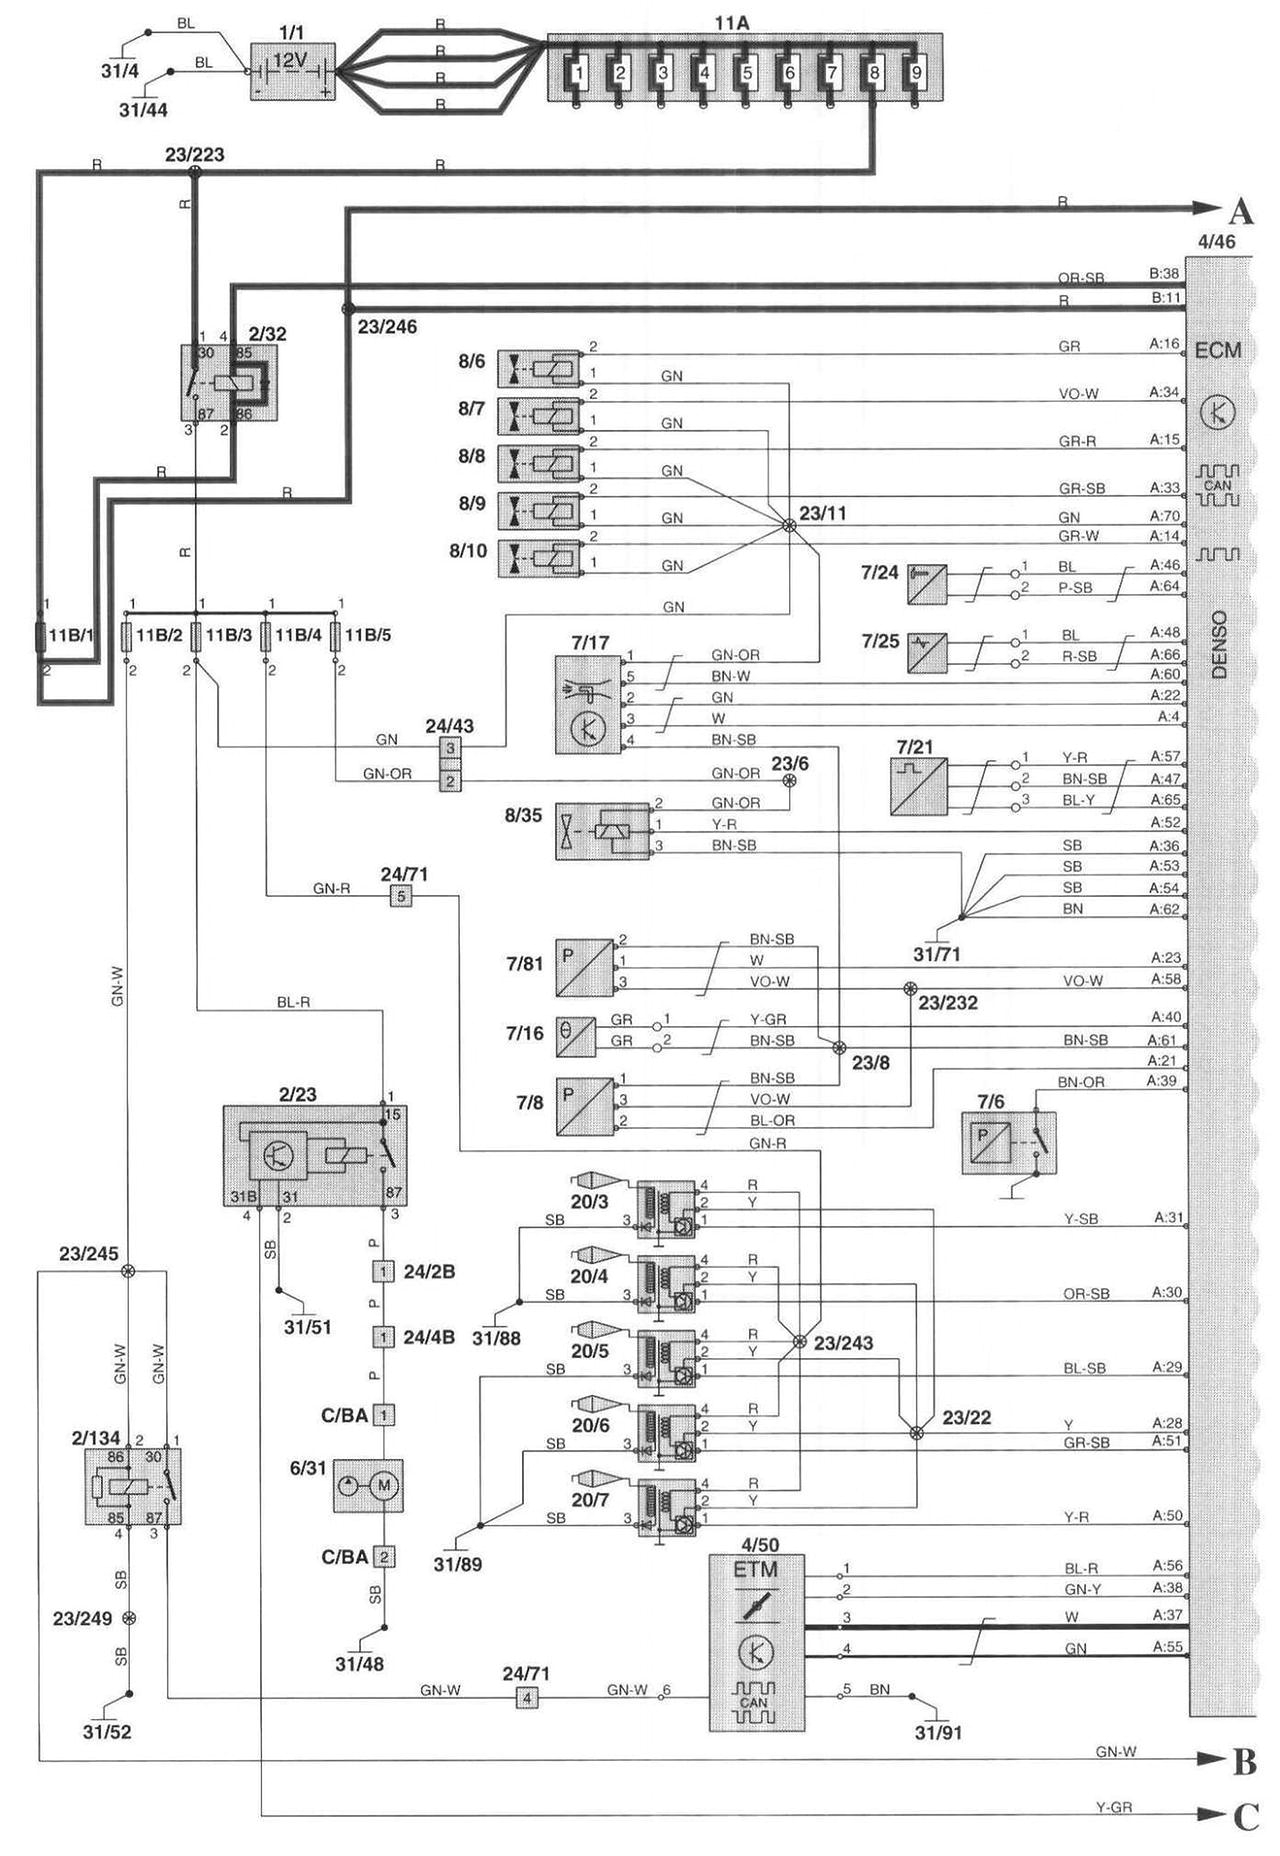 2004 volvo s40 fuse diagram wiring diagram go 2004 volvo s40 wiring diagram 2004 volvo s40 fuse diagram